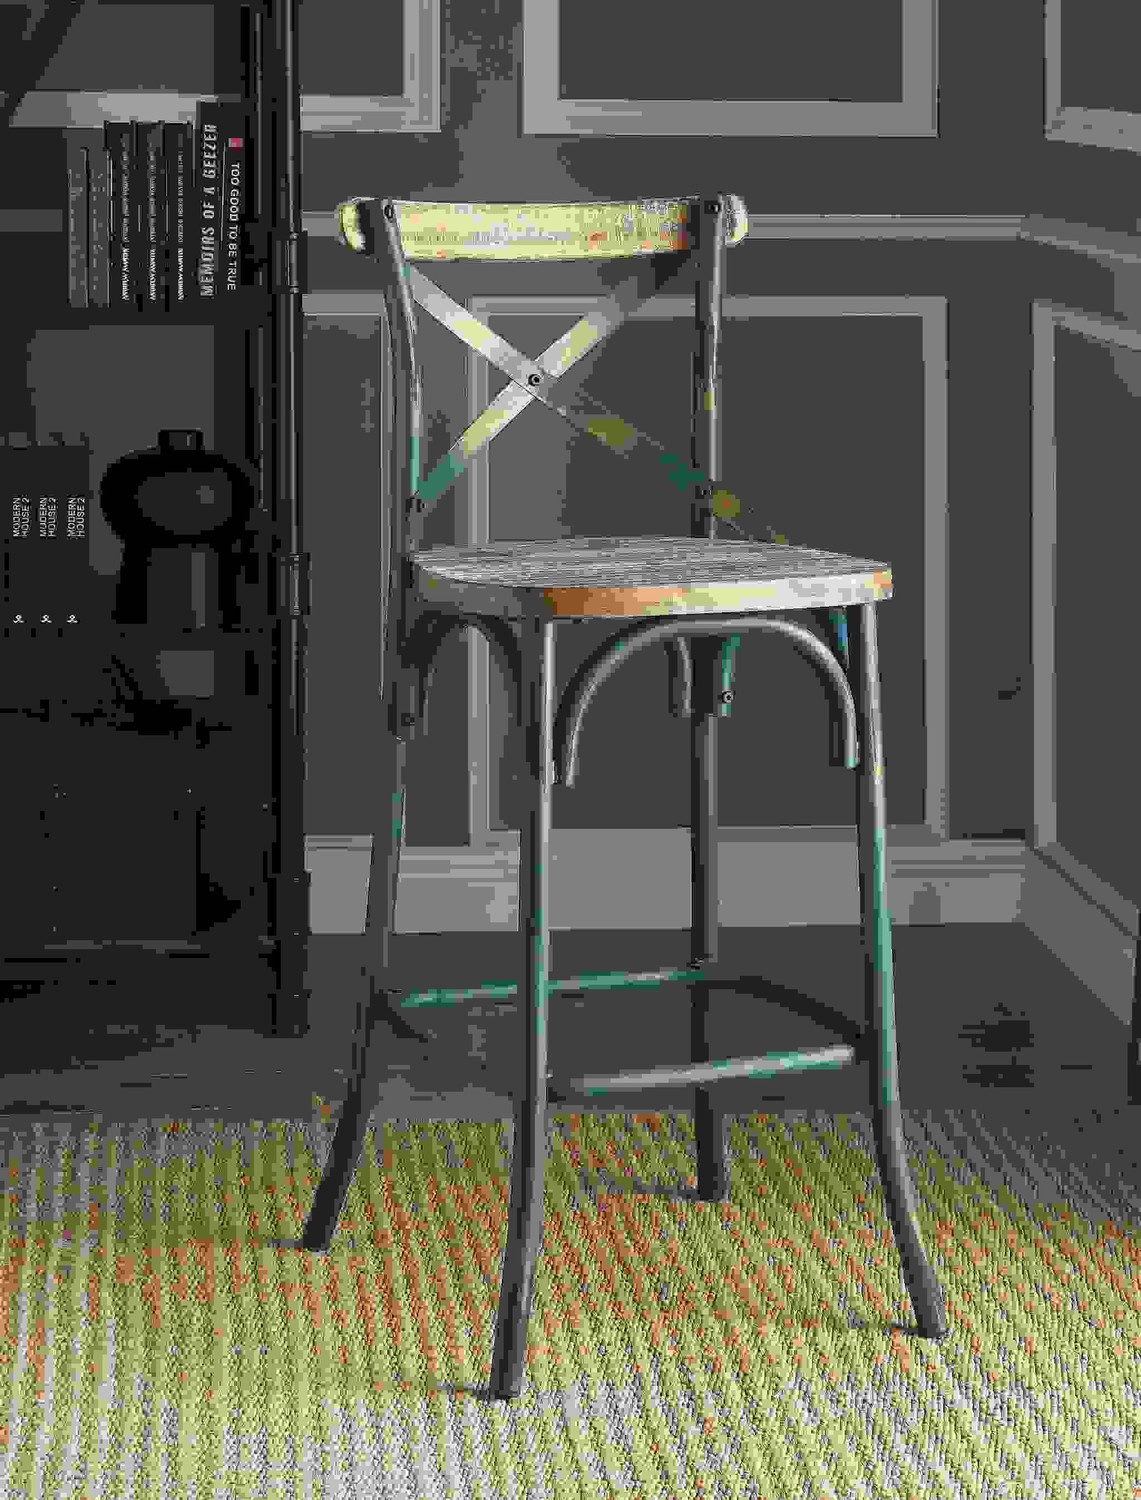 18" X 20" X 43" Antique Turquoise & Antique Oak Wood Bar Chair (1Pc)